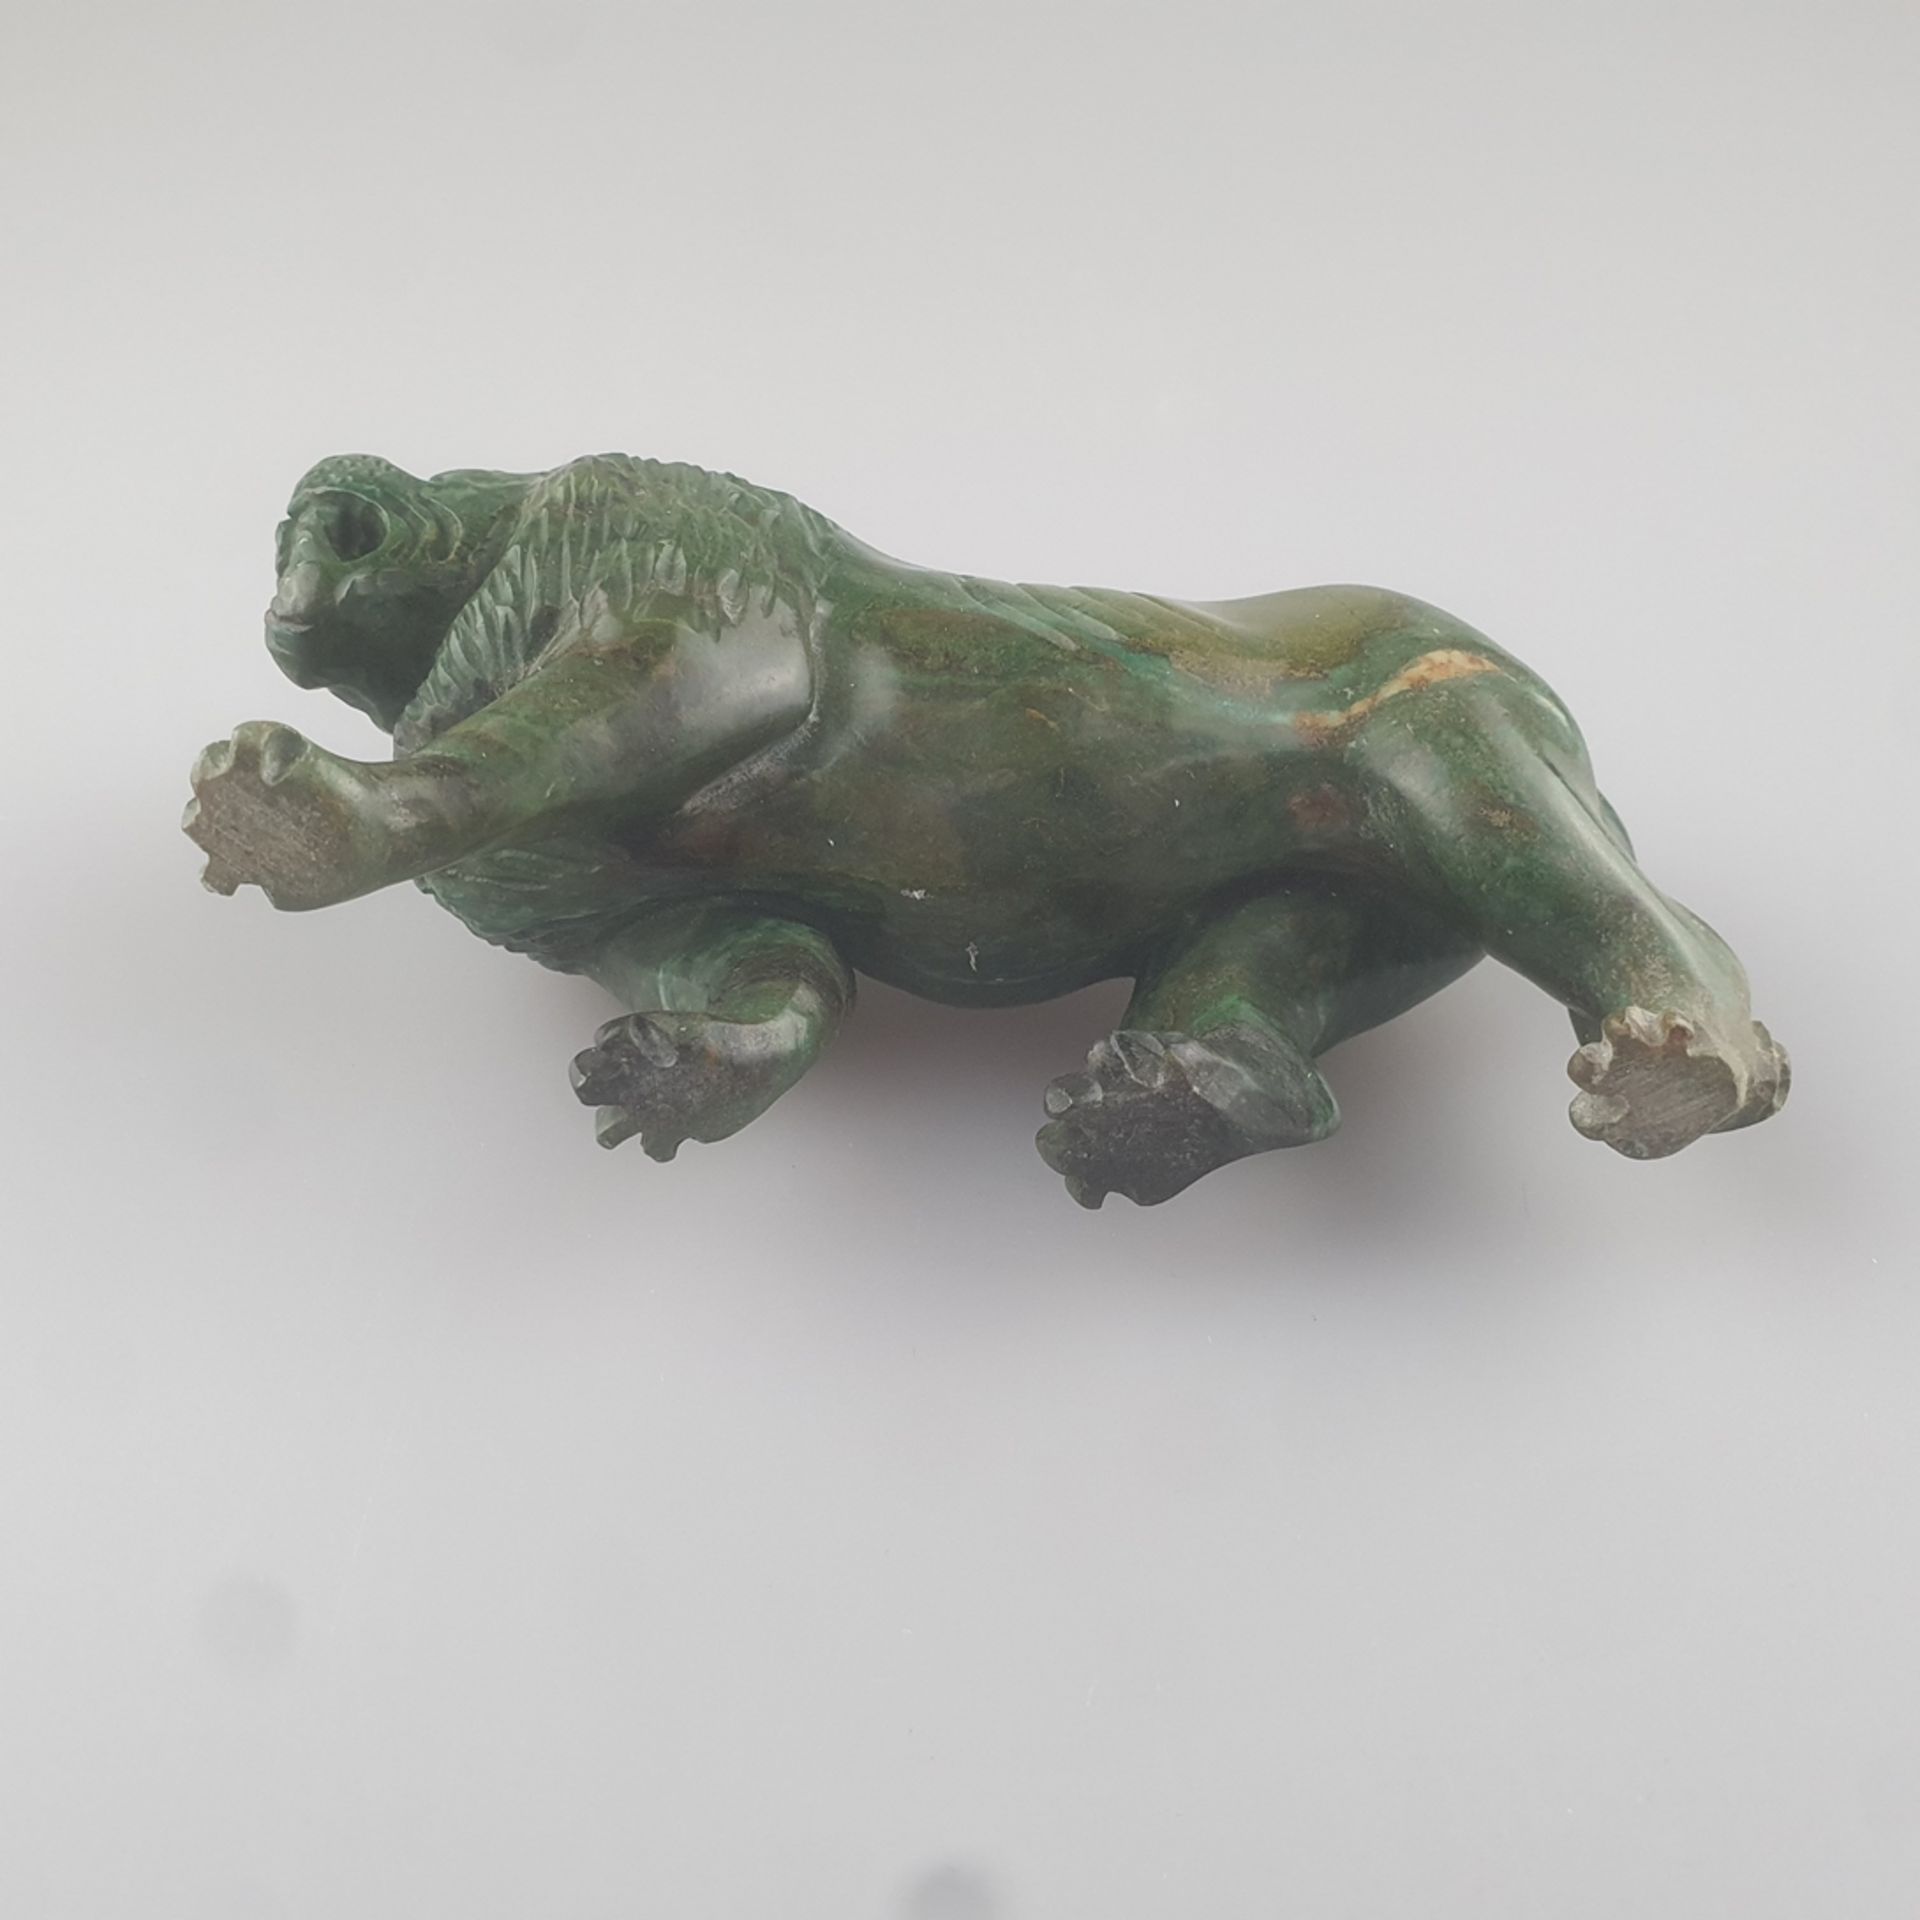 Schreitender Löwe - grüner Stein vollrund geschnitzt, wohl Chrysokoll, mit aufgerissenem Maul und ü - Image 4 of 4